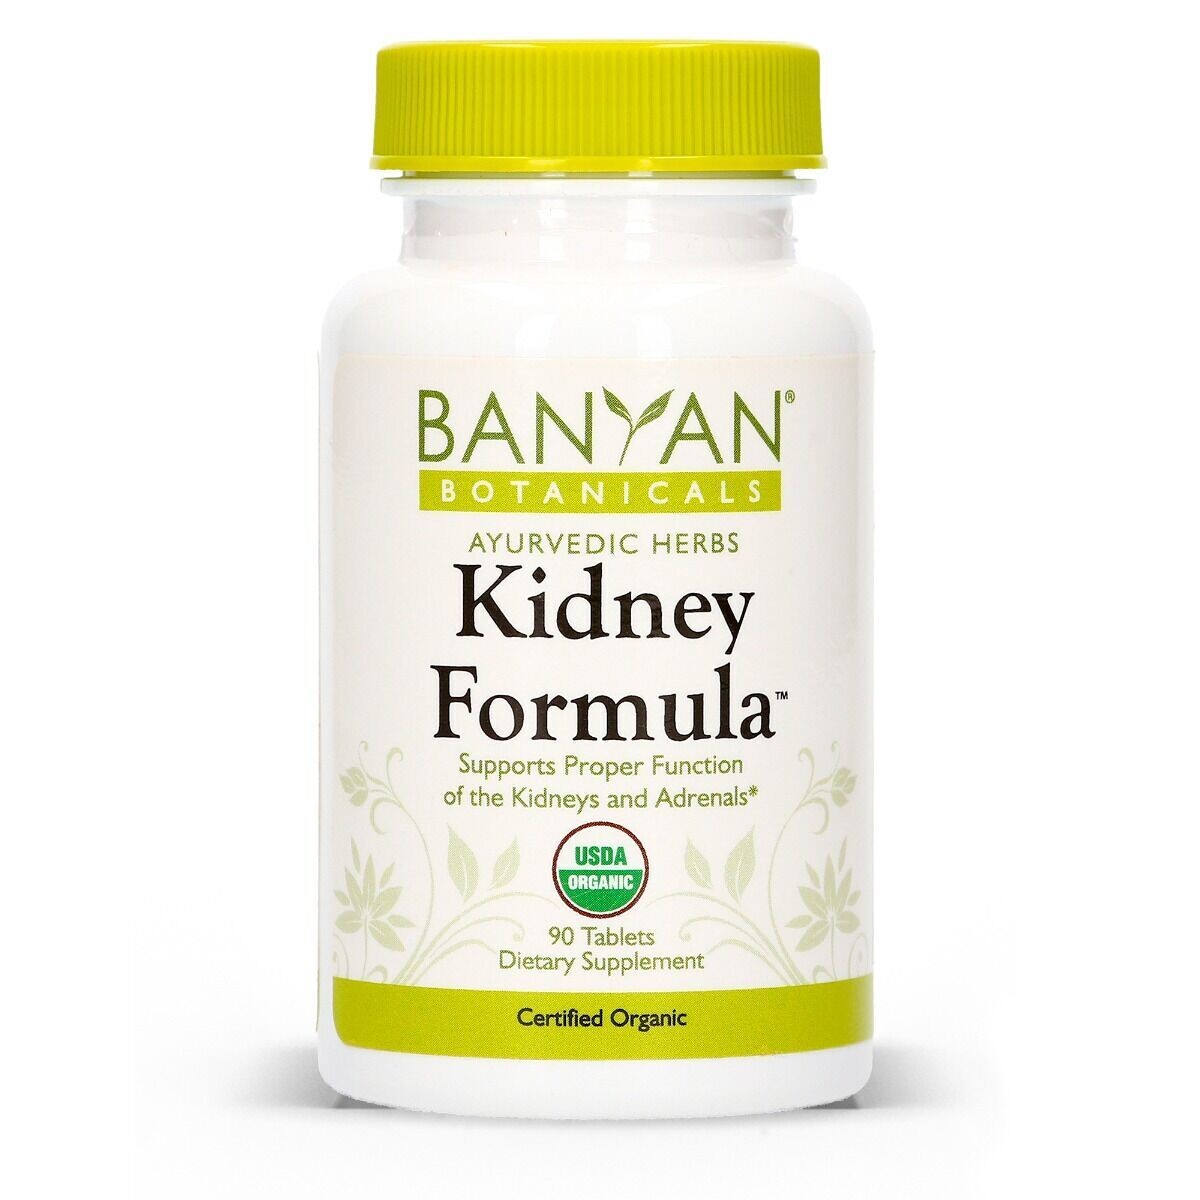 Kidney Formula Tablets by Banyan Botanicals